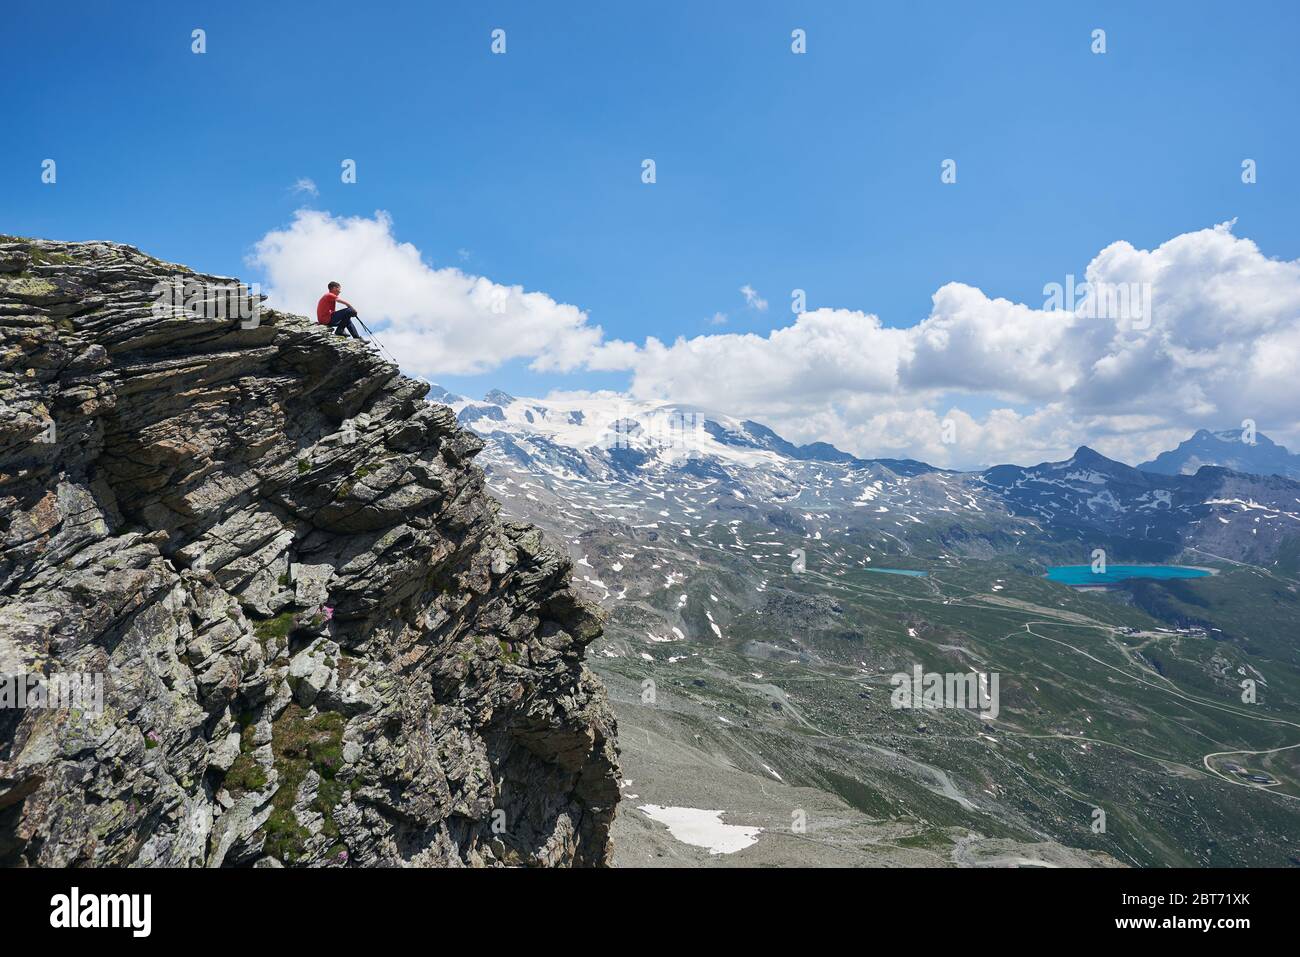 Splendida vista del viaggiatore seduto sul bordo di alta scogliera rocciosa sotto il cielo nuvoloso. Uomo turistico ammirando la vista della valle di montagna con colline e lago blu. Concetto di viaggio, escursioni e alpinismo. Foto Stock